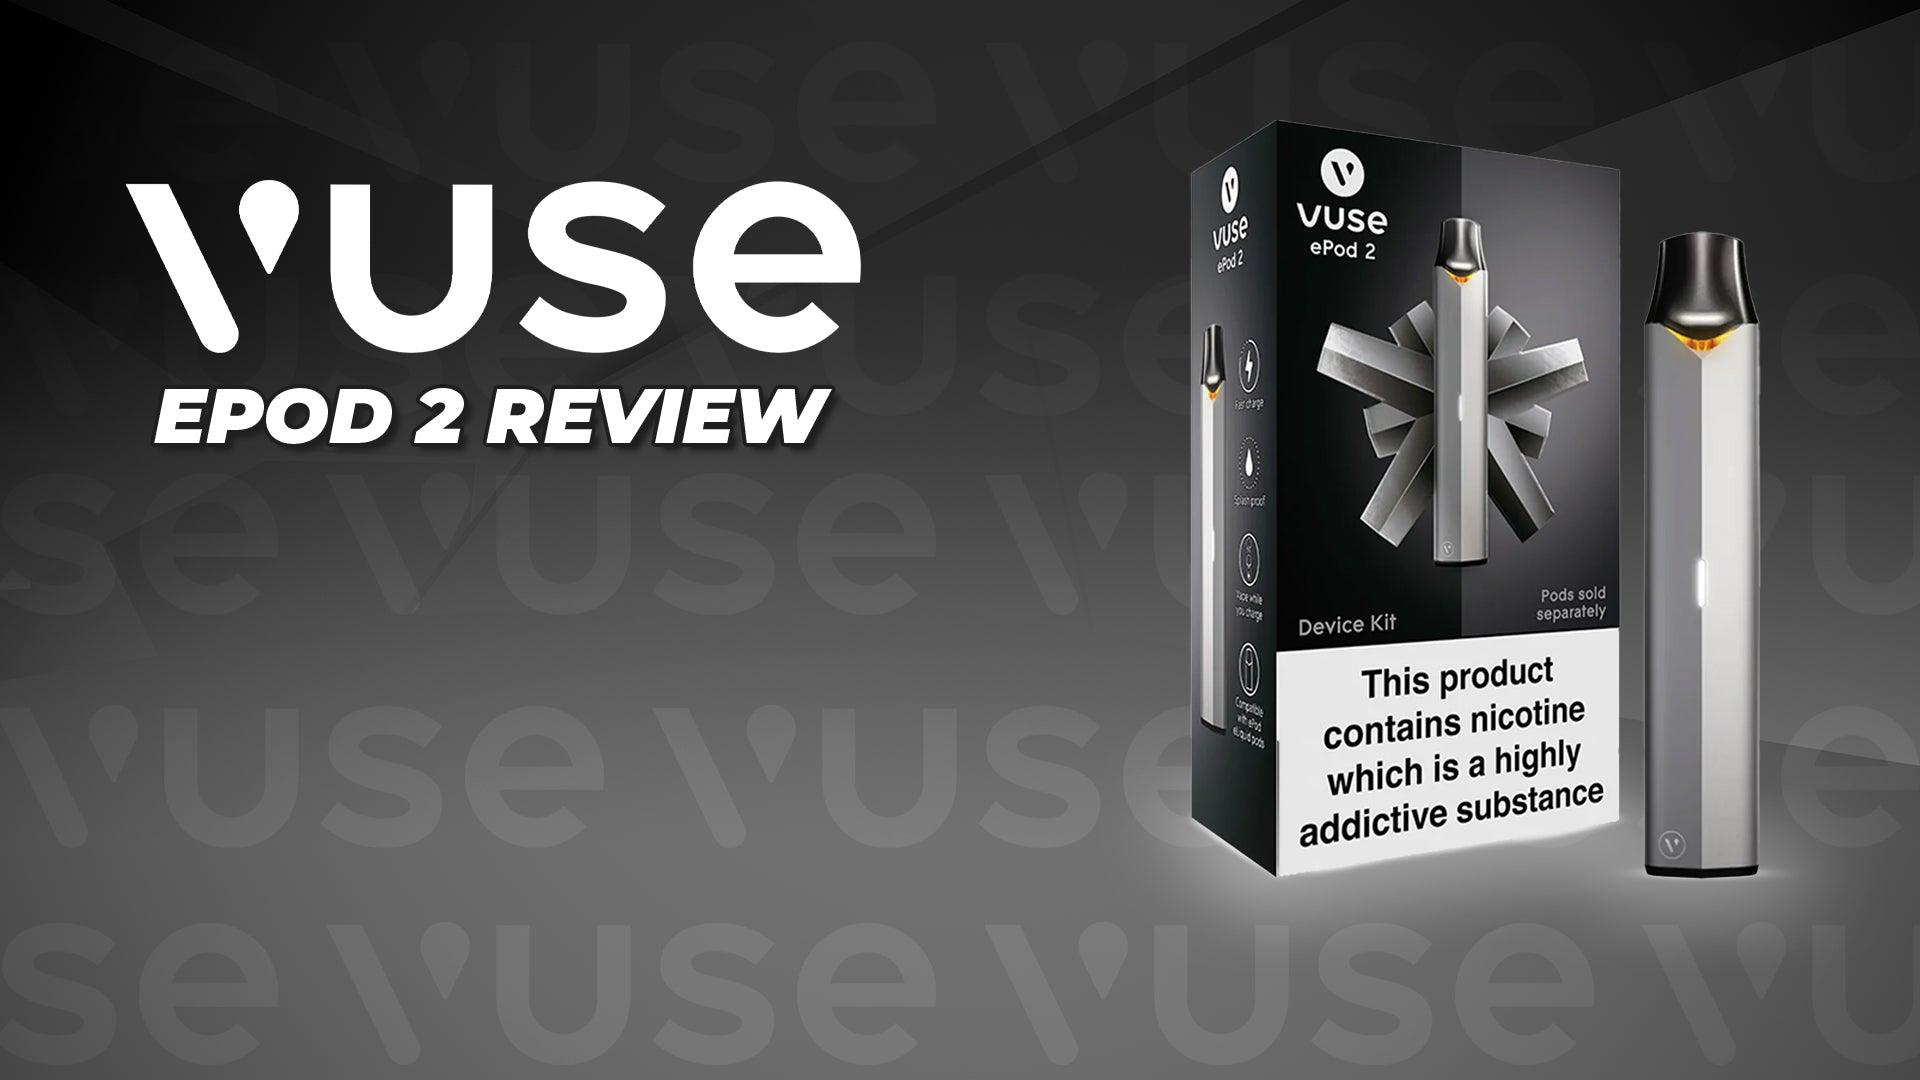 Vuse ePod 2 Review - Brand:Vuse, Category:Vape Kits, Sub Category:Pod Kits